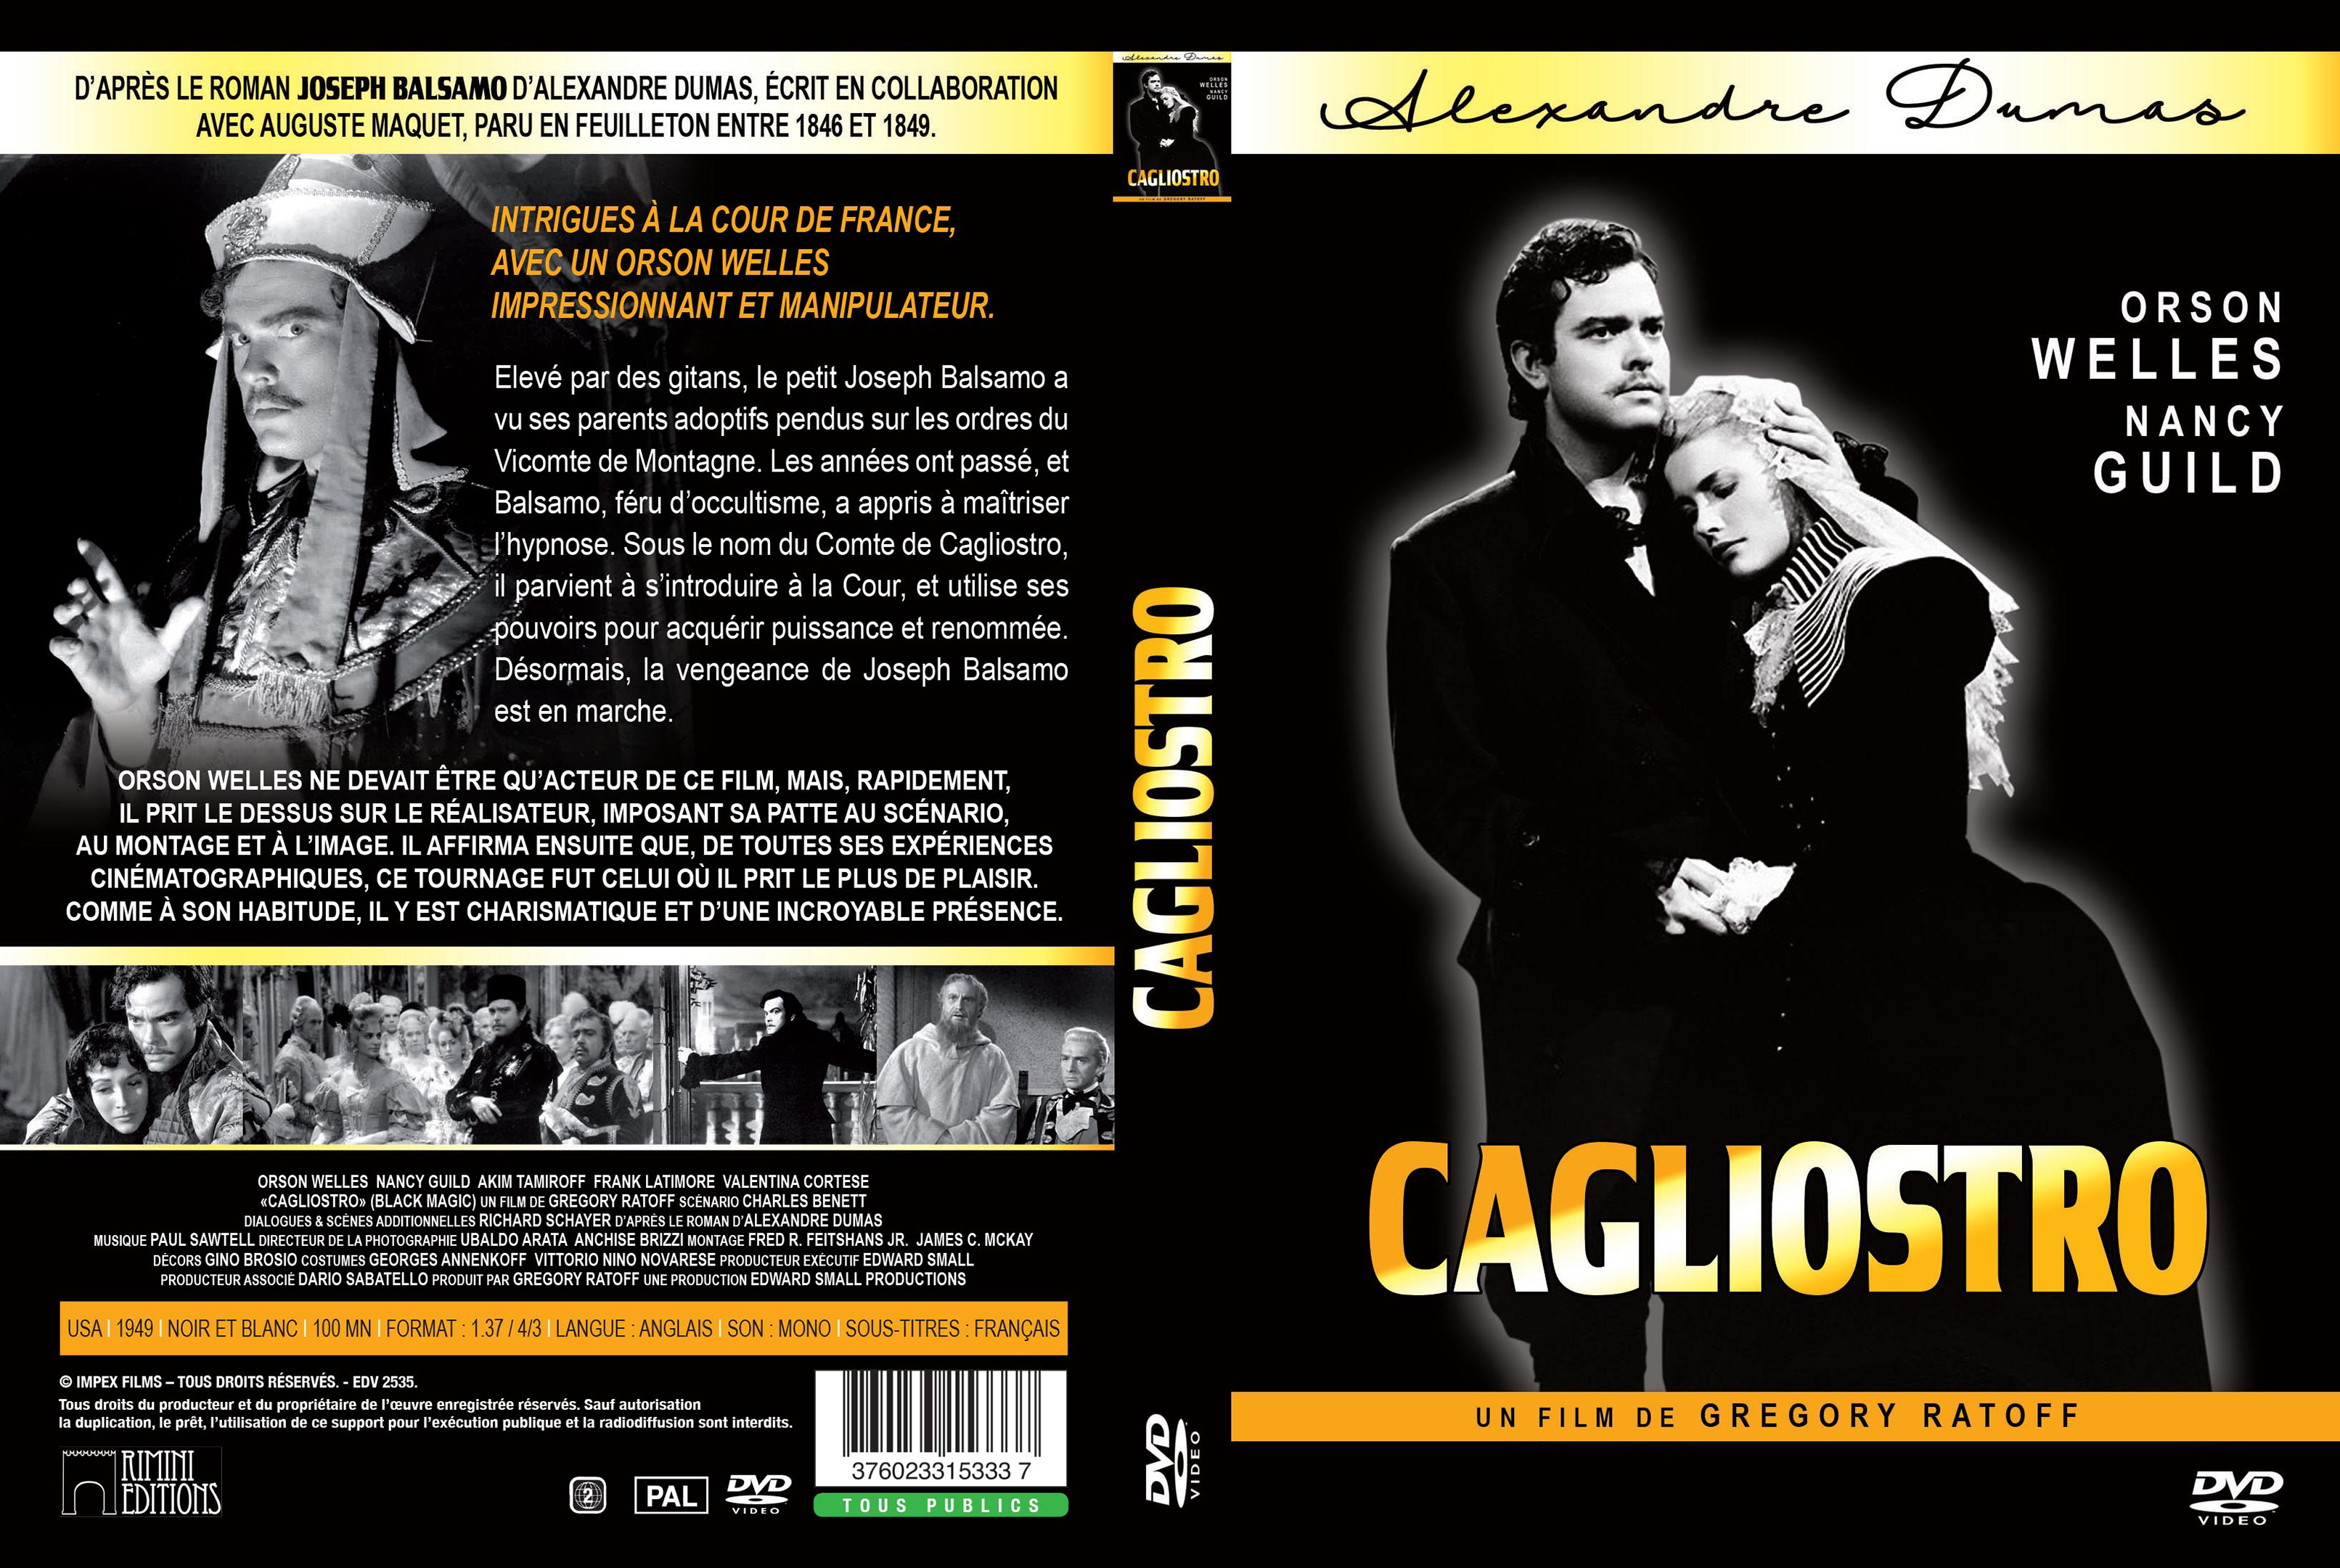 Jaquette DVD Cagliostro